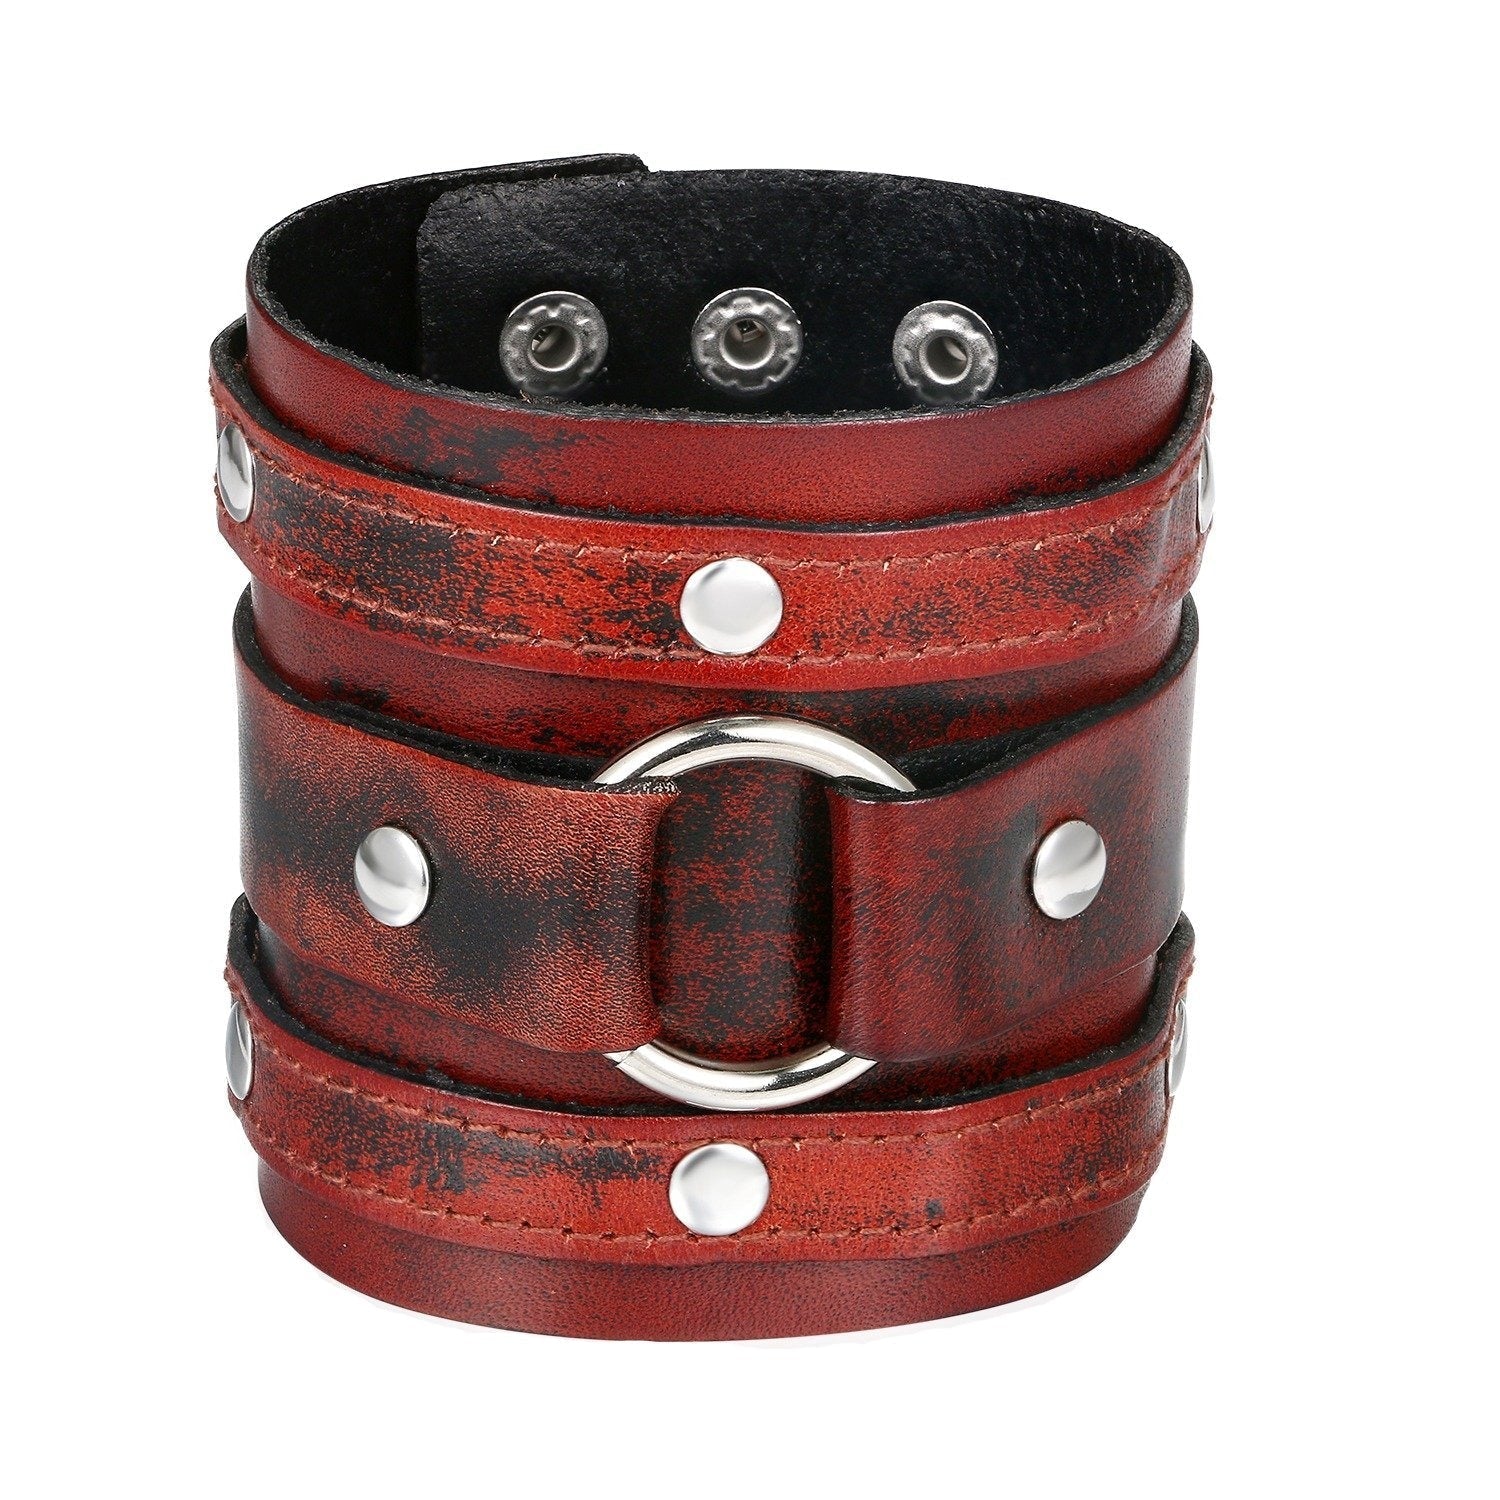 Classic Rock Style Bracelets / Cool Biker Jewelry For Men and Women / Black Adjustable Bracelet - HARD'N'HEAVY